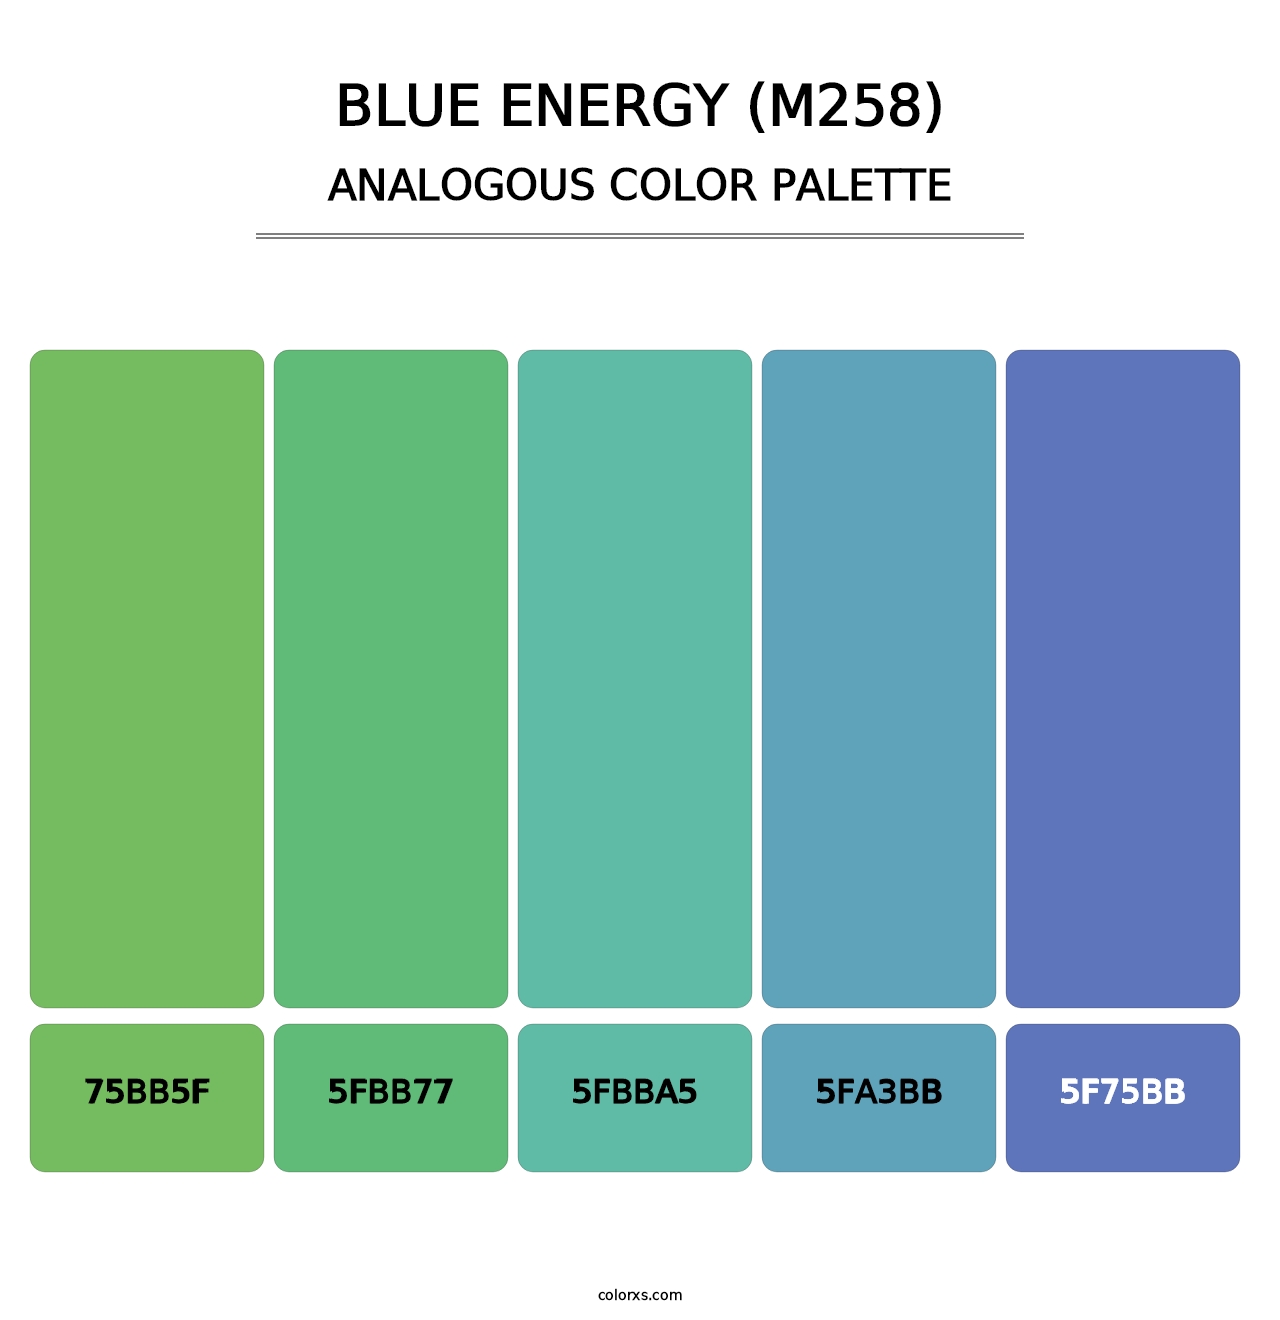 Blue Energy (M258) - Analogous Color Palette